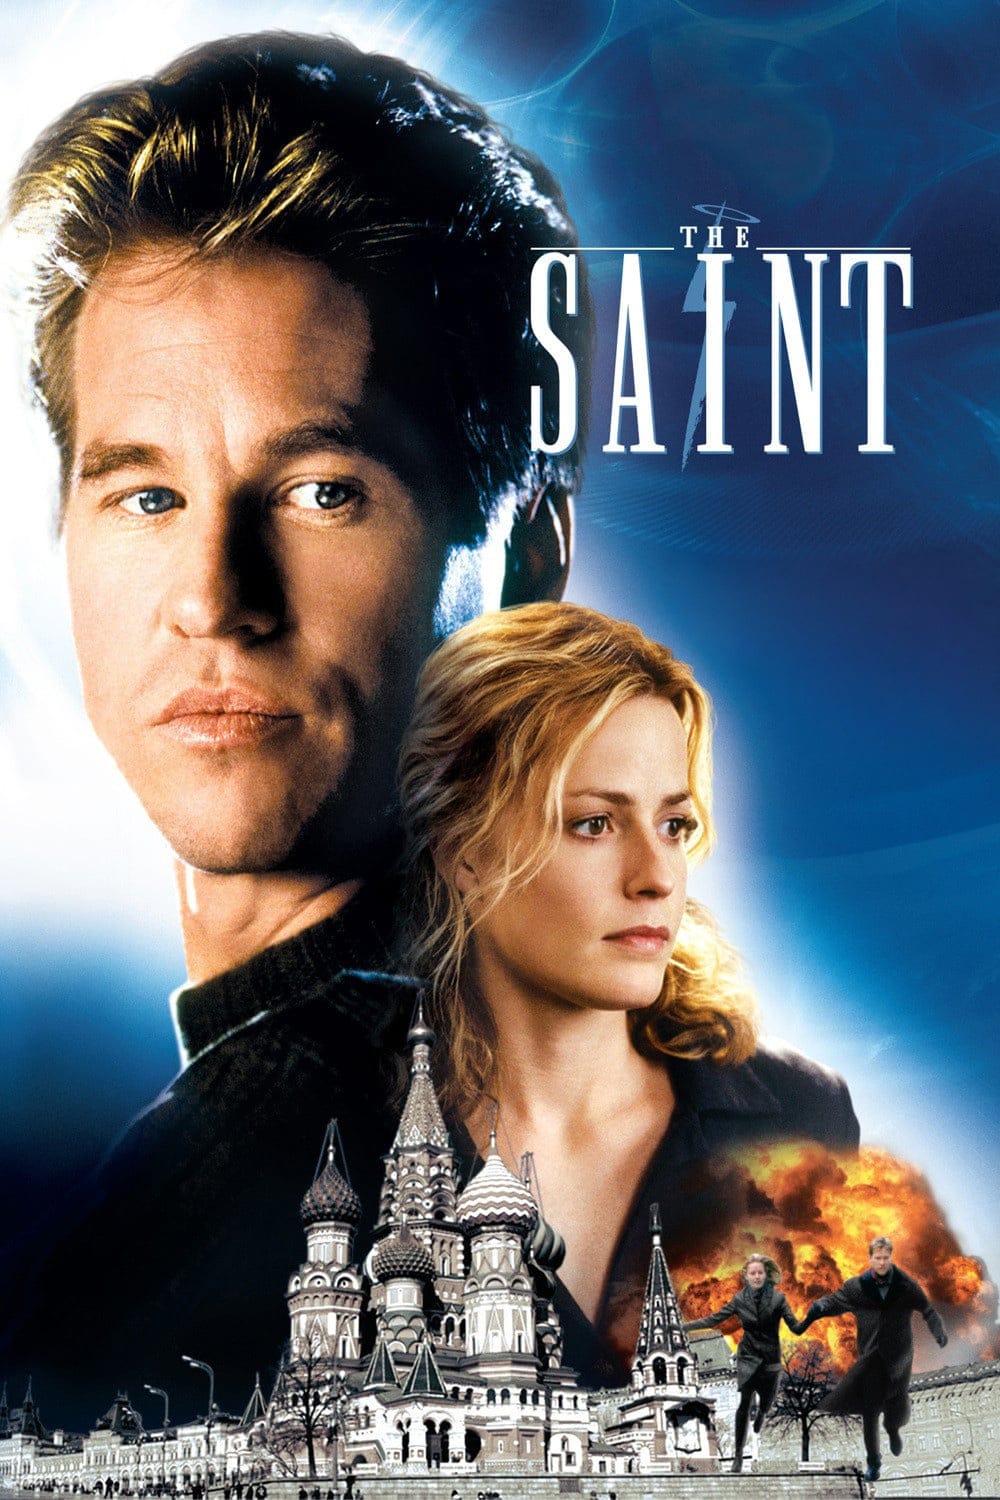 Plakat von "The Saint - Der Mann ohne Namen"